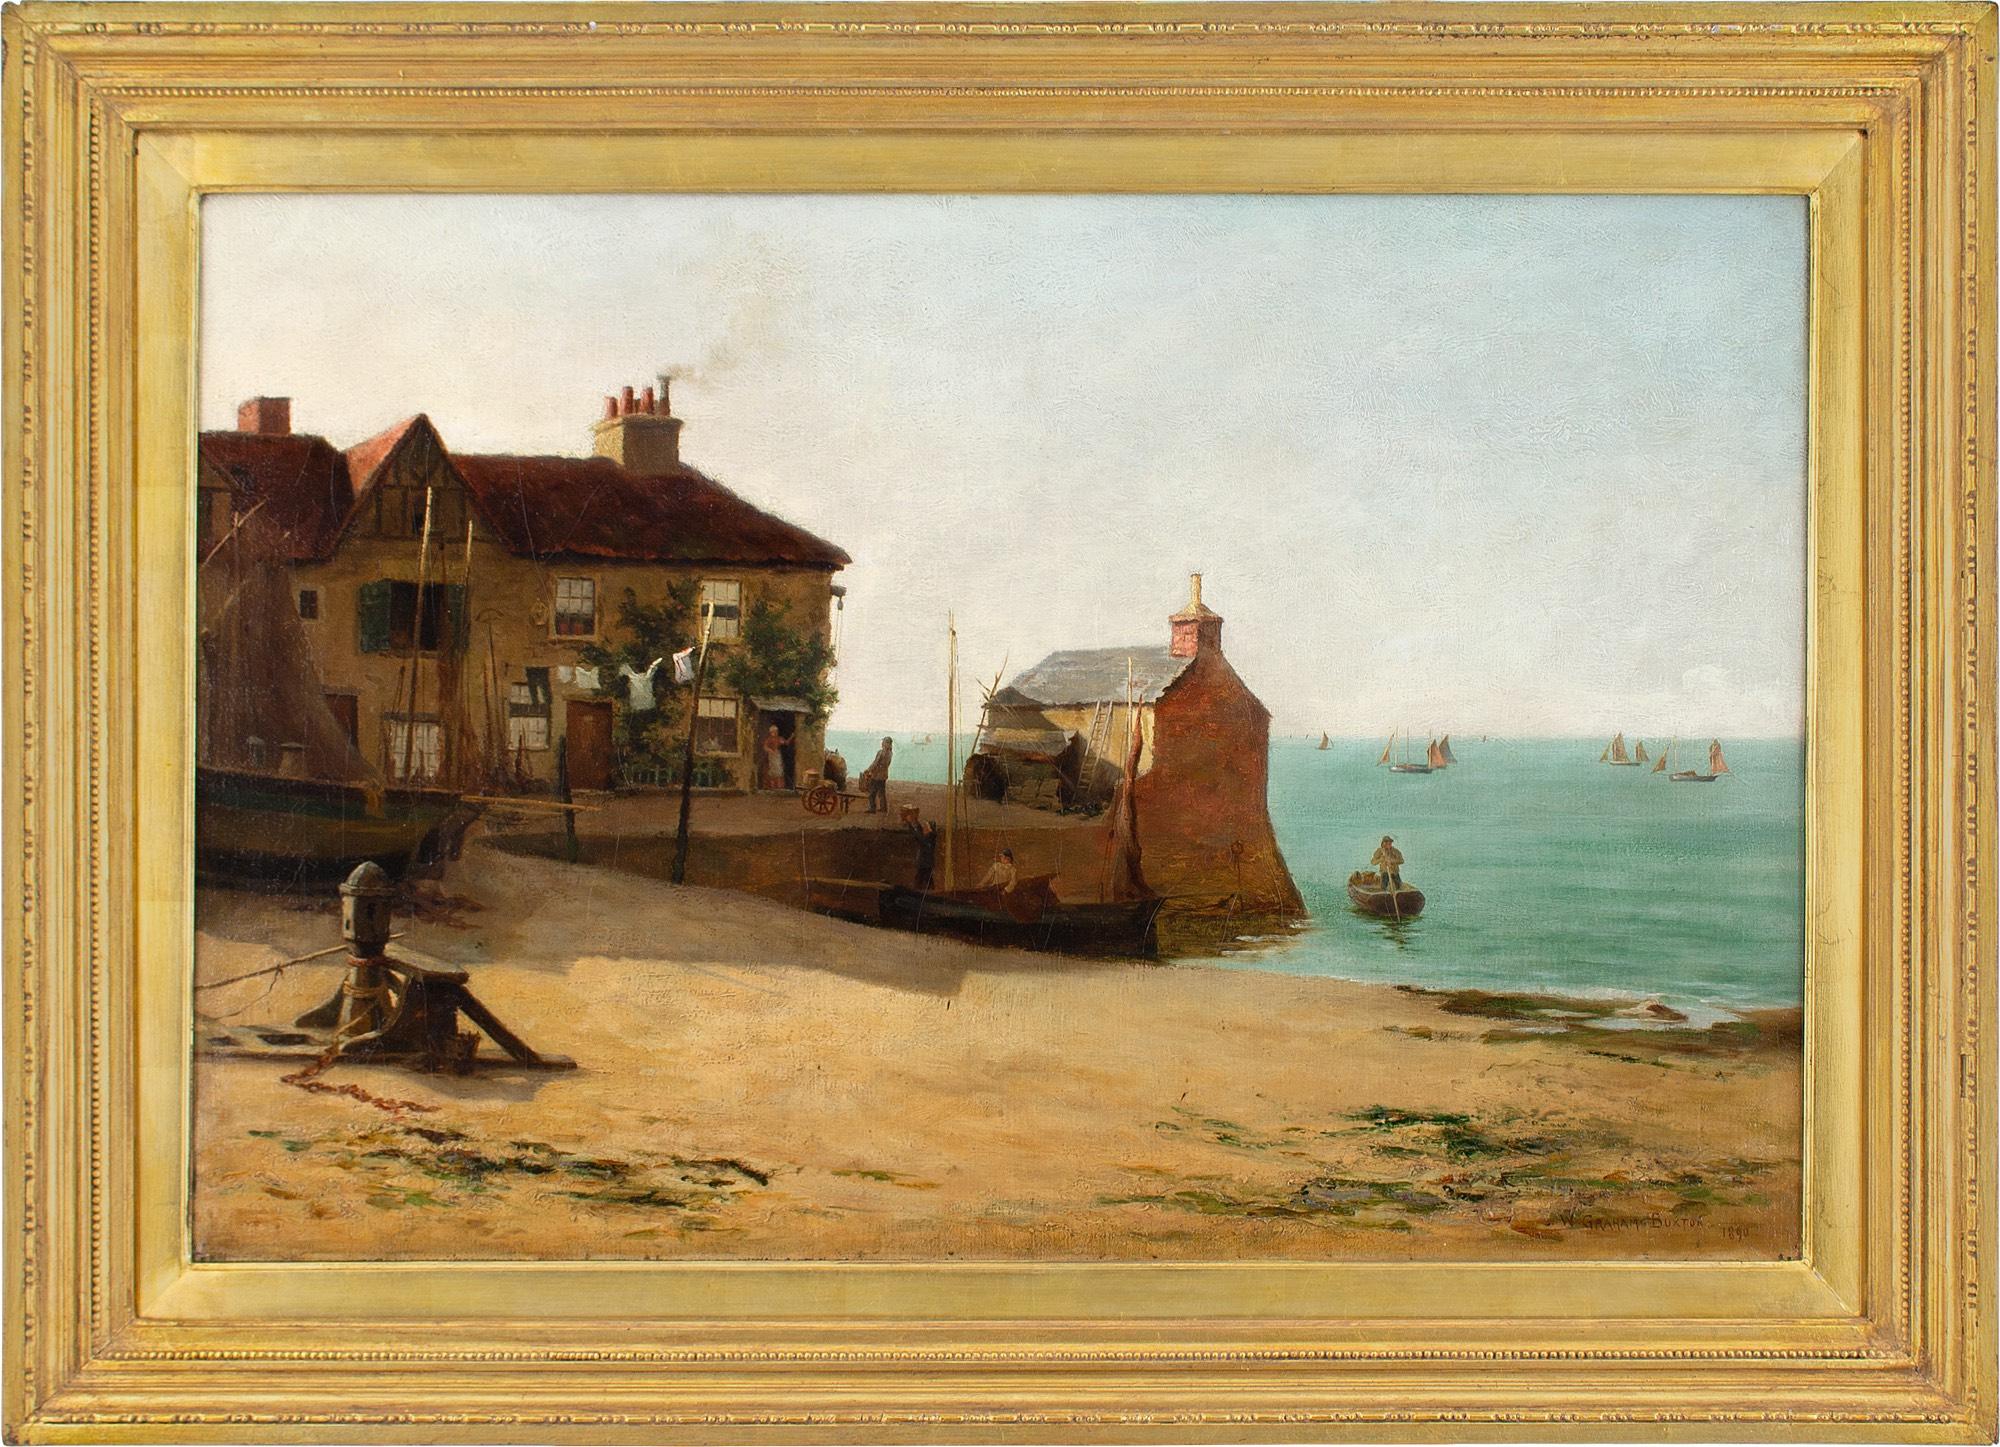 Dieses Ölgemälde des britischen Künstlers William Graham Buxton (1858-1926) aus dem späten 19. Jahrhundert zeigt eine charmante Küstenansicht in Essex, England. Es wurde 1890 in der Royal Academy ausgestellt.

Im Schatten der hellen Morgensonne